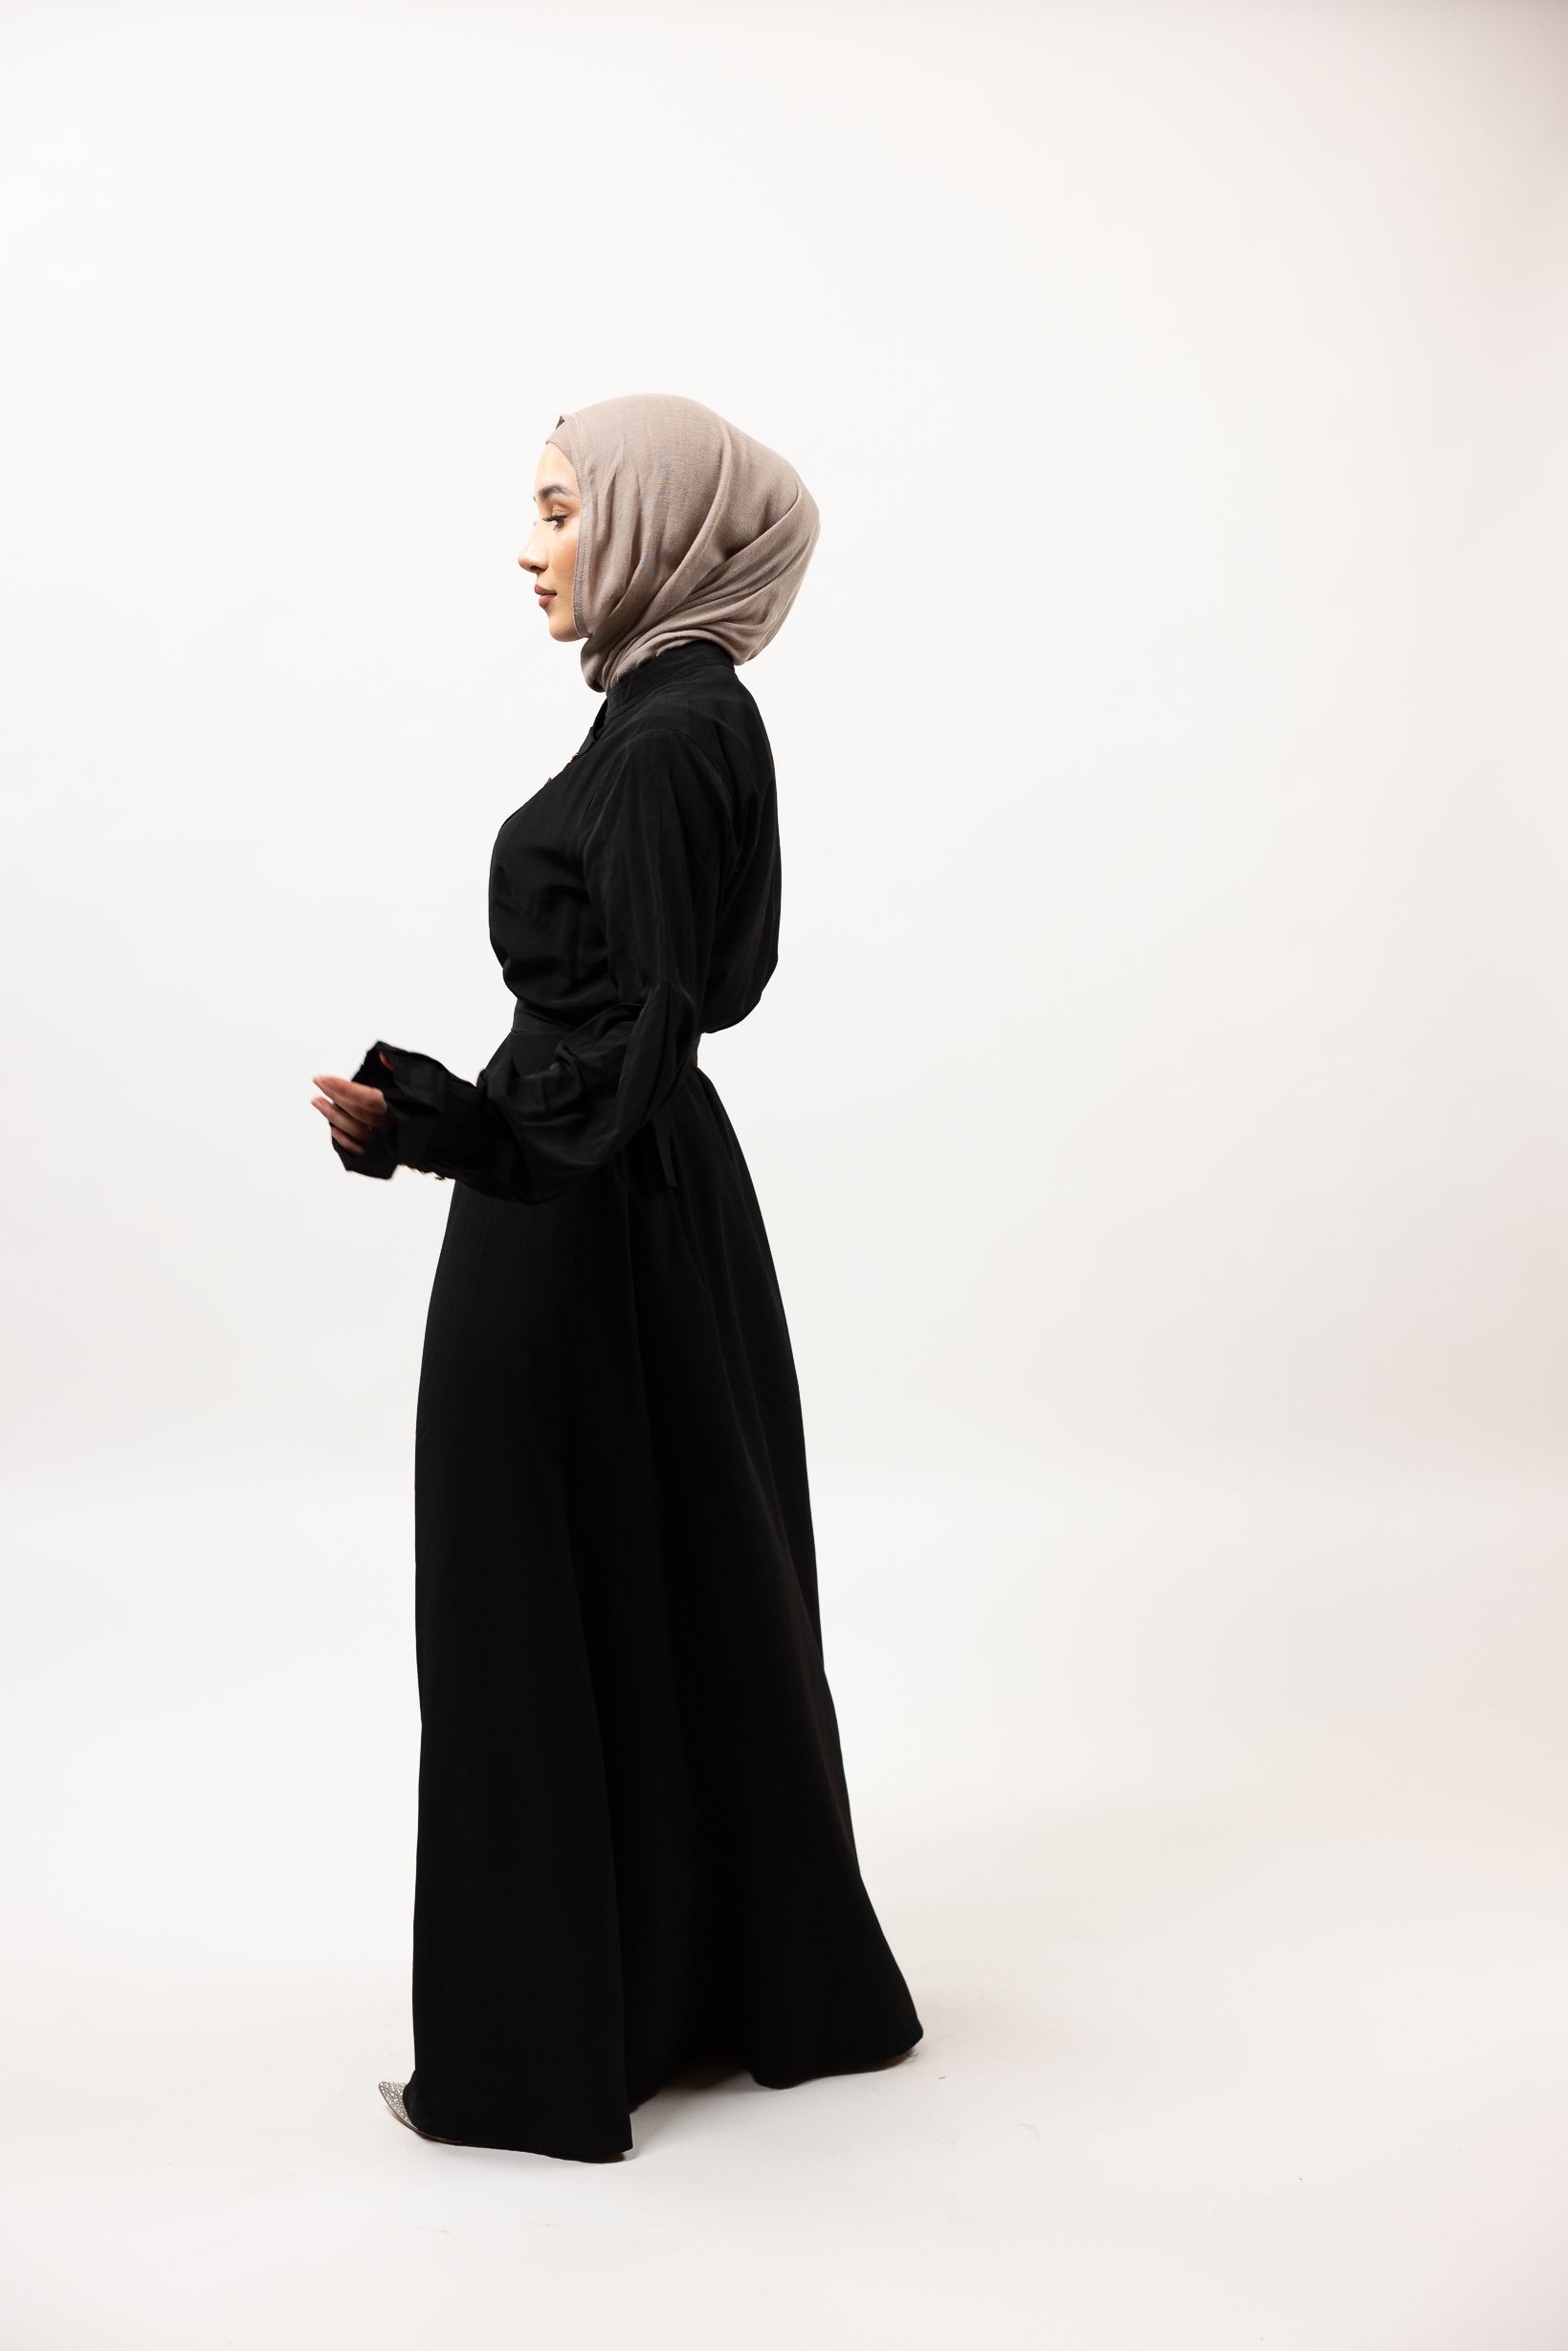 M8278Black-dress-abaya